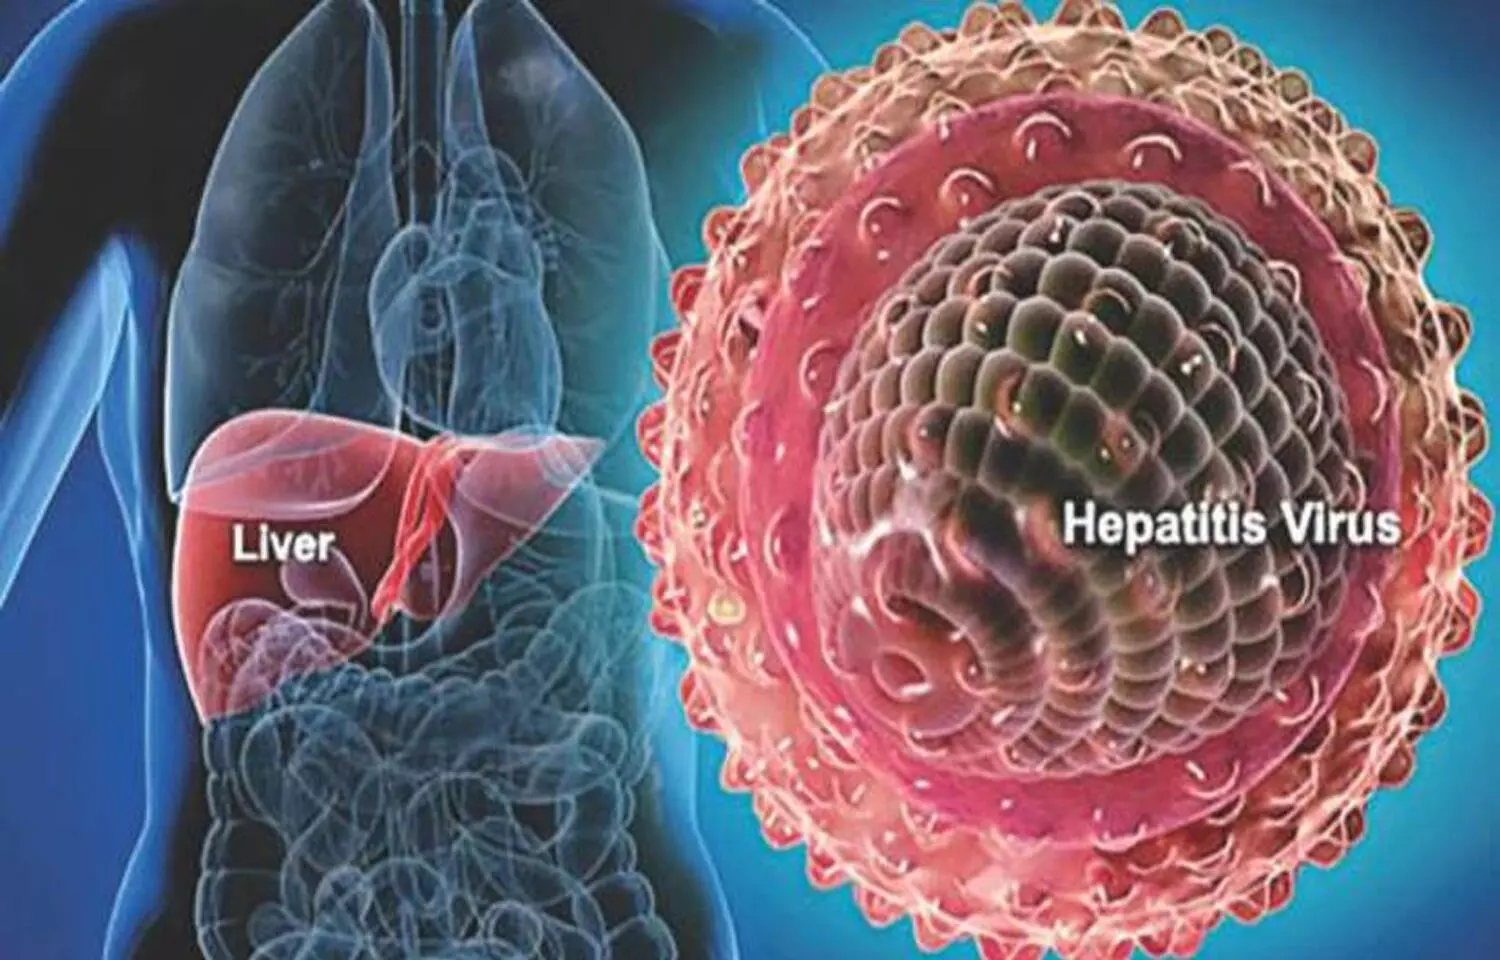 The AGPR Index - novel non-invasive marker in Chronic Hepatitis B